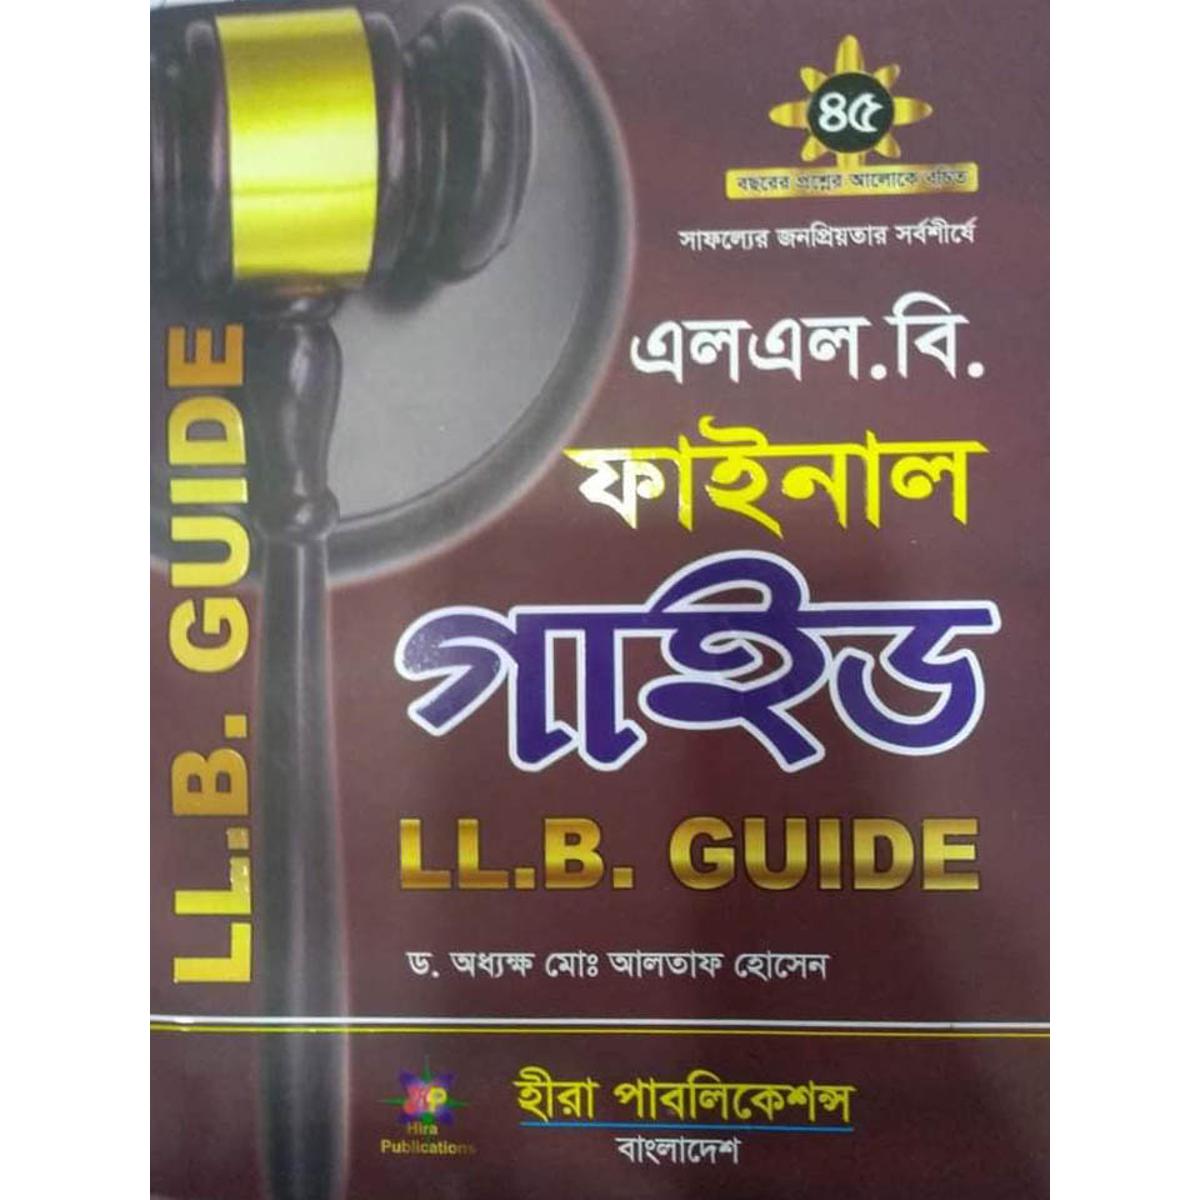 এলএল বি ফাইনাল গাইড / LLB Final Guide by D.Pro. Altaf Hosen